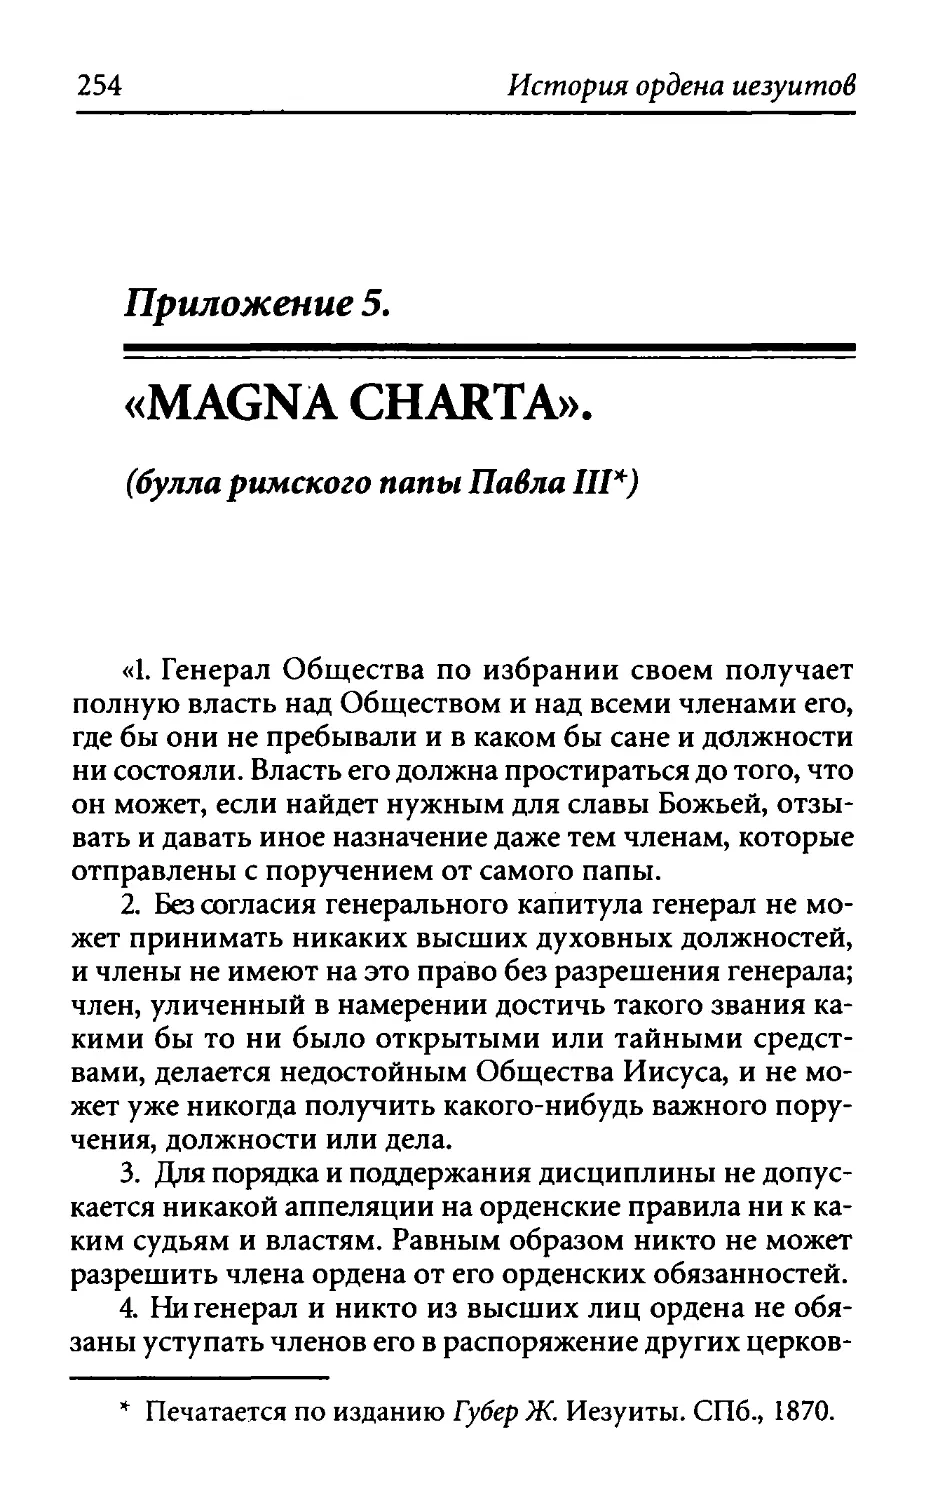 ﻿Приложение 5. «Magna Charta» øбулла римского папы Павла III, декабрь 1549